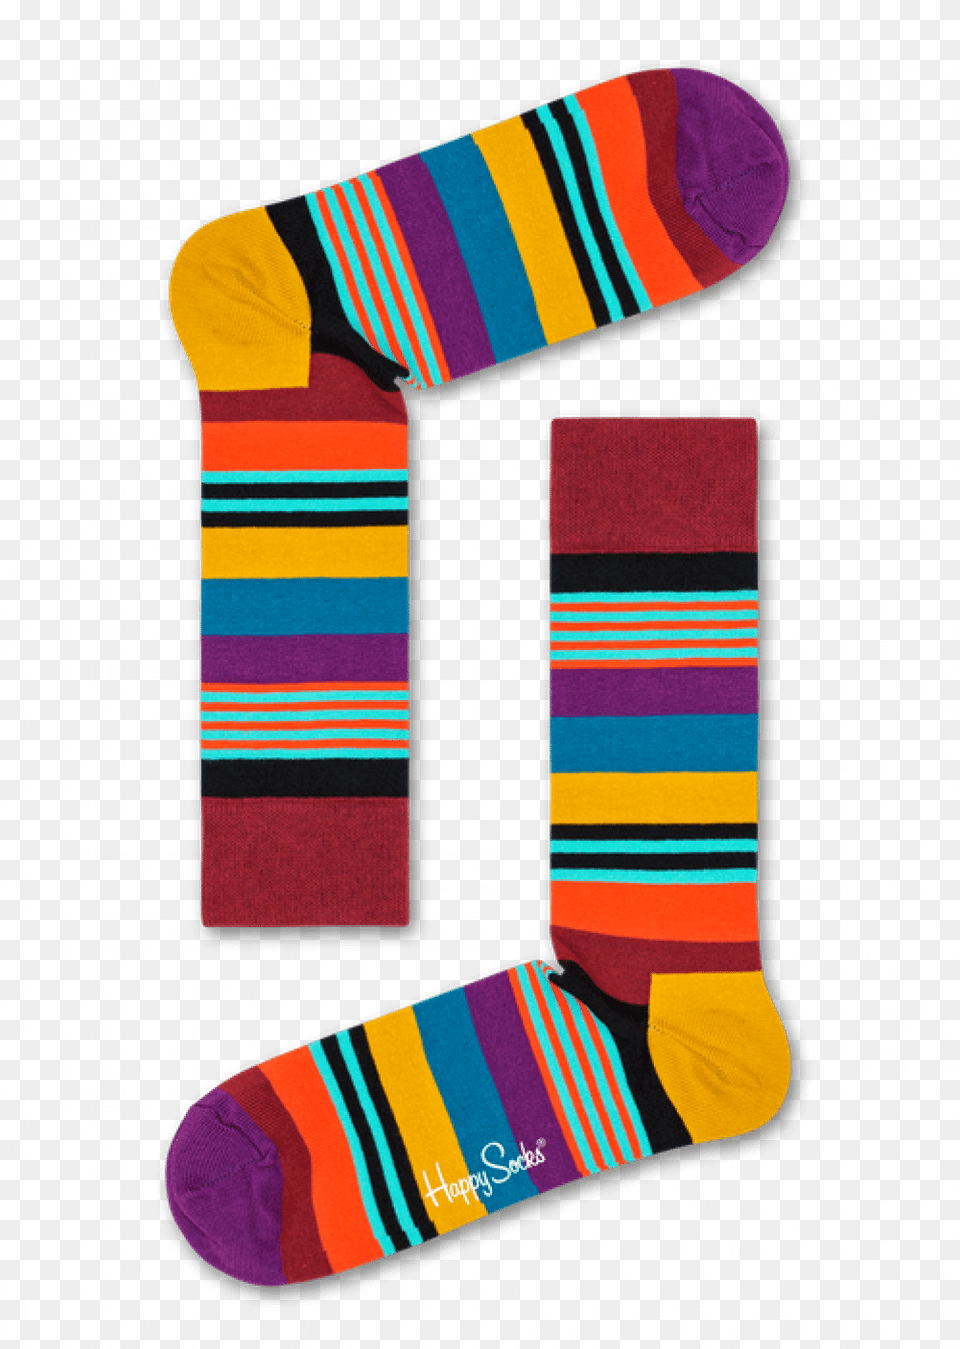 609 Happy Socks, Clothing, Hosiery, Sock Png Image